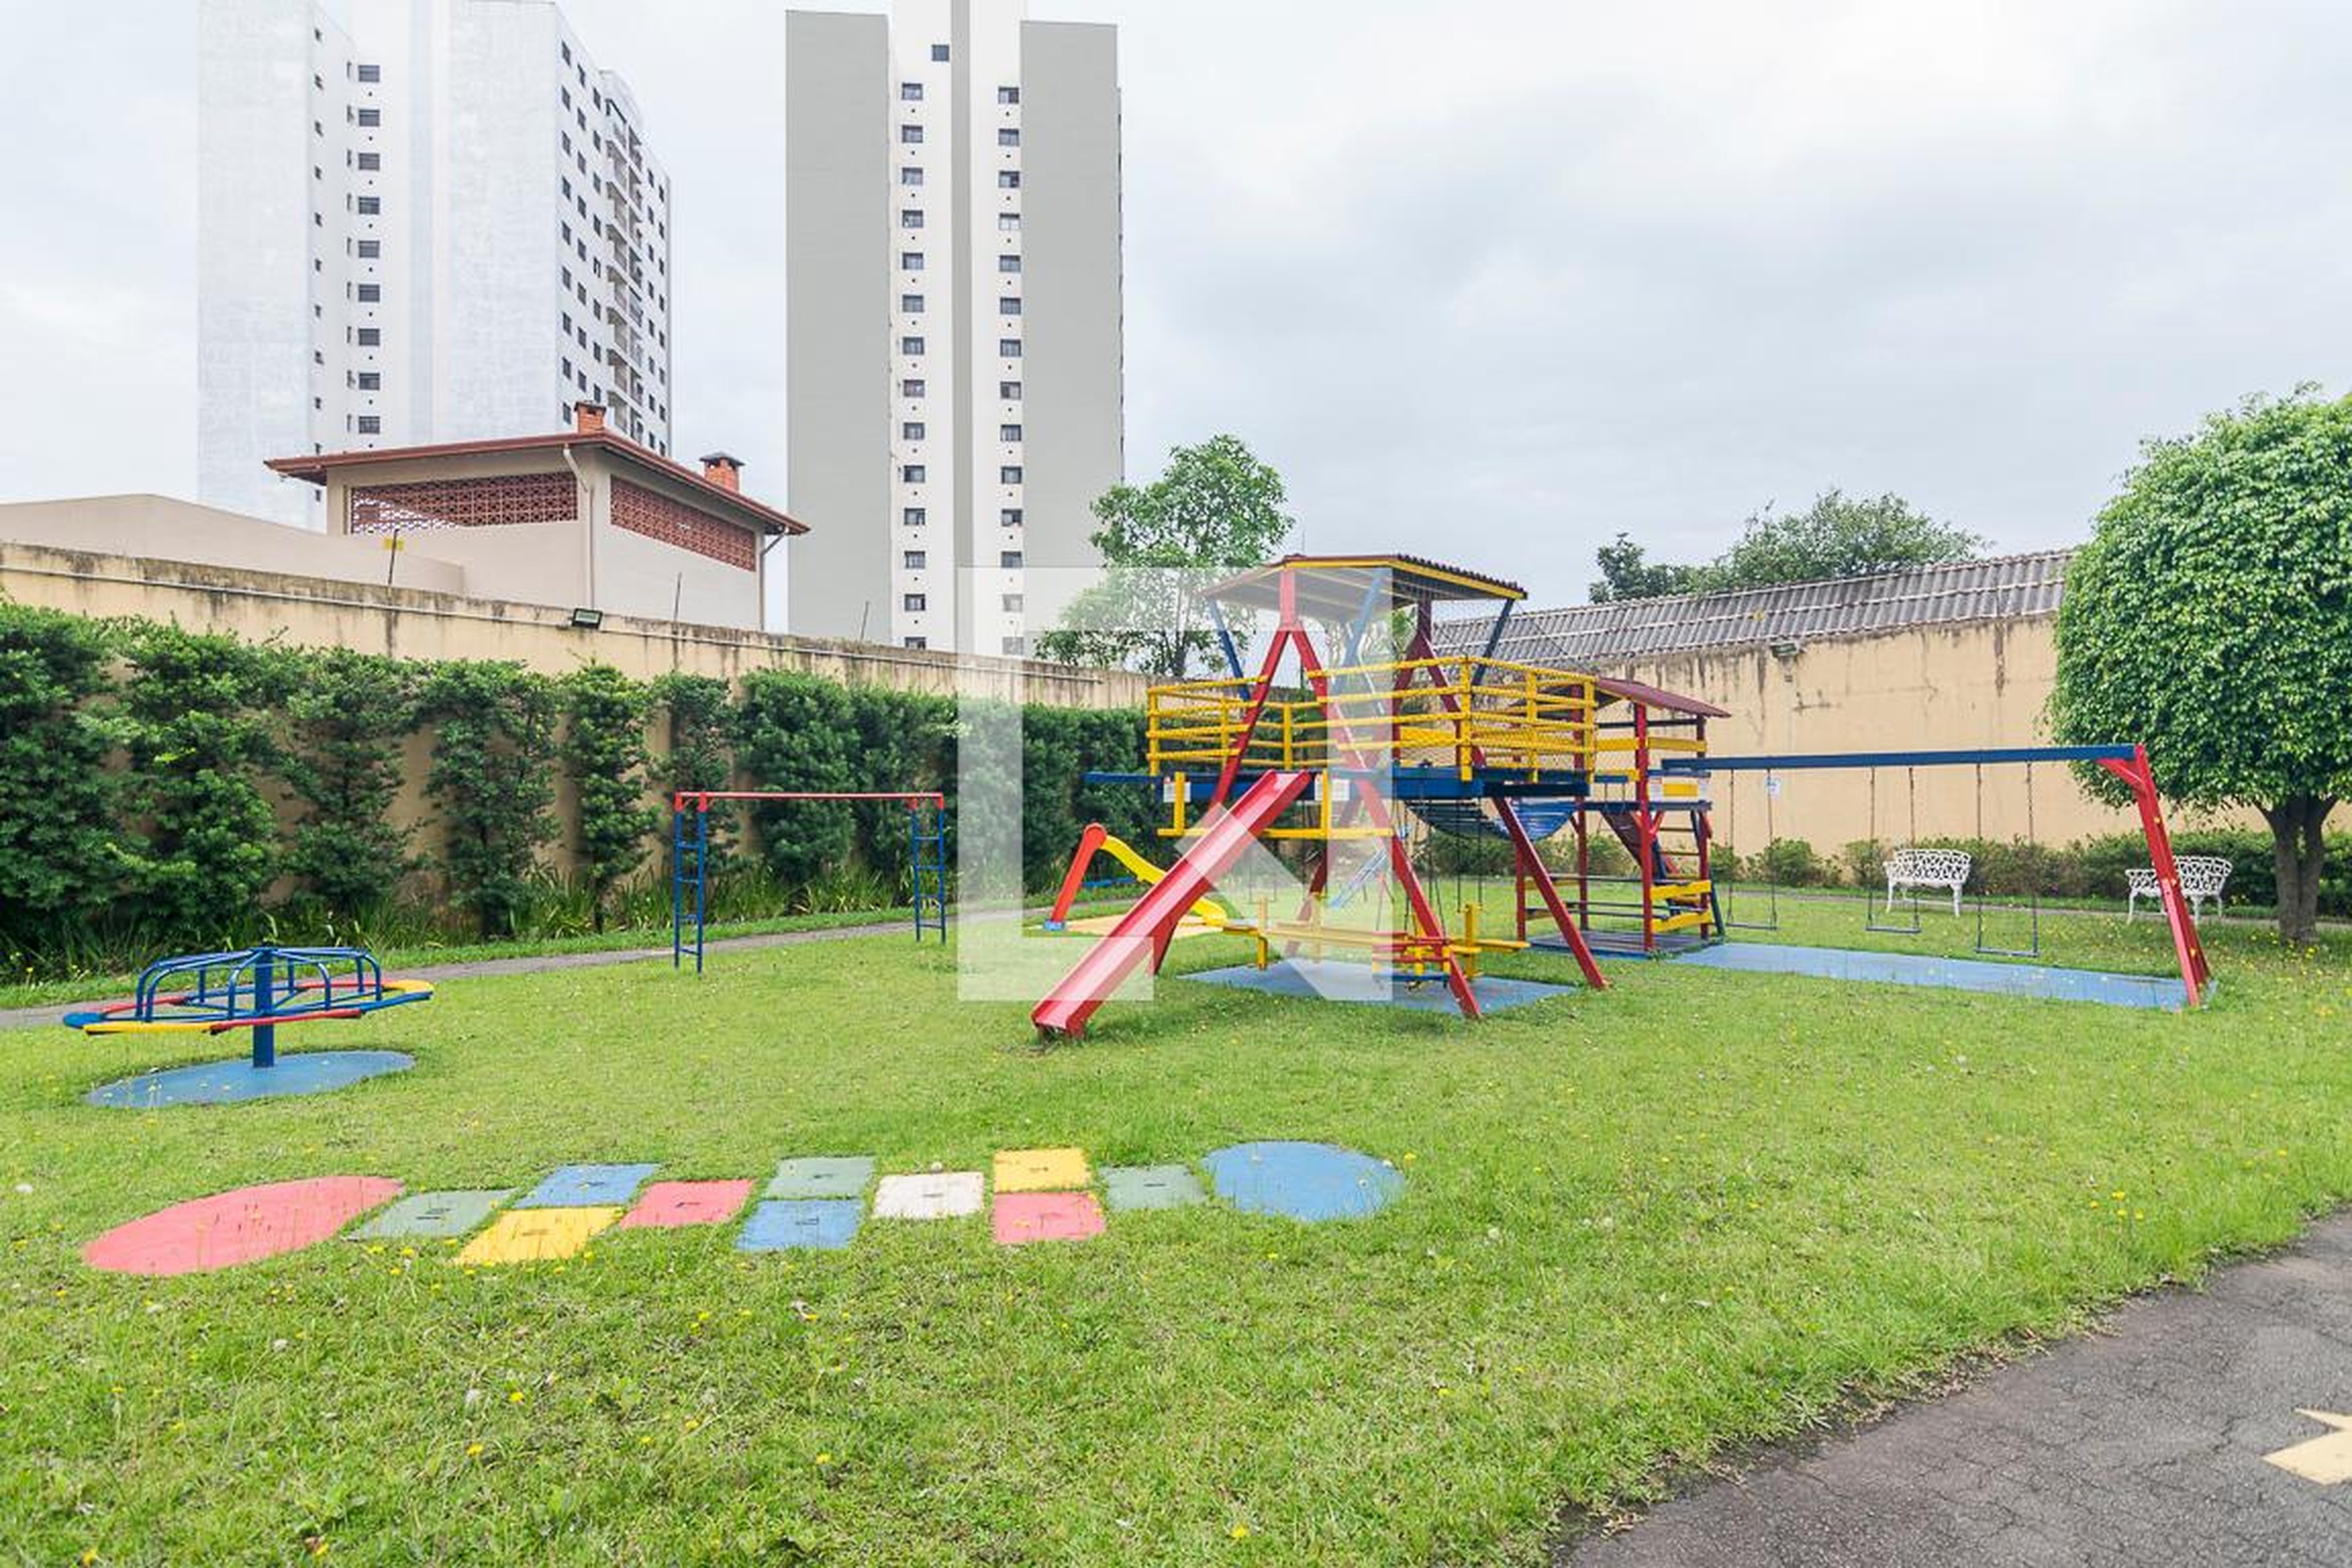 Playground - Parque das Cerejeiras